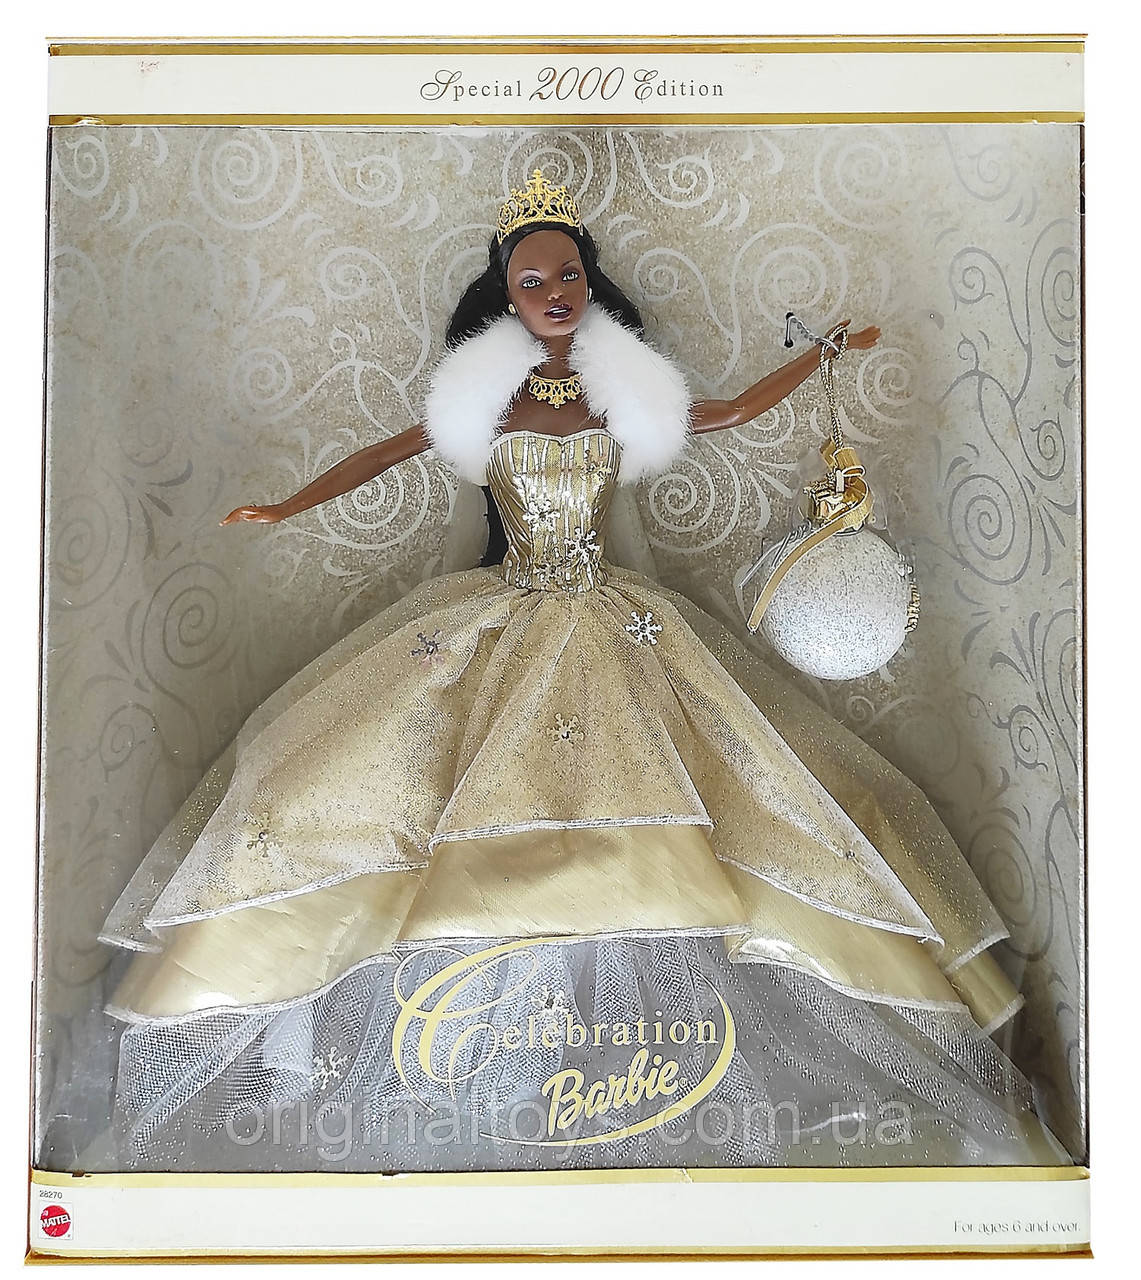 Колекційна лялька Барбі Special 2000 Edition Celebration Barbie Mattel 28270